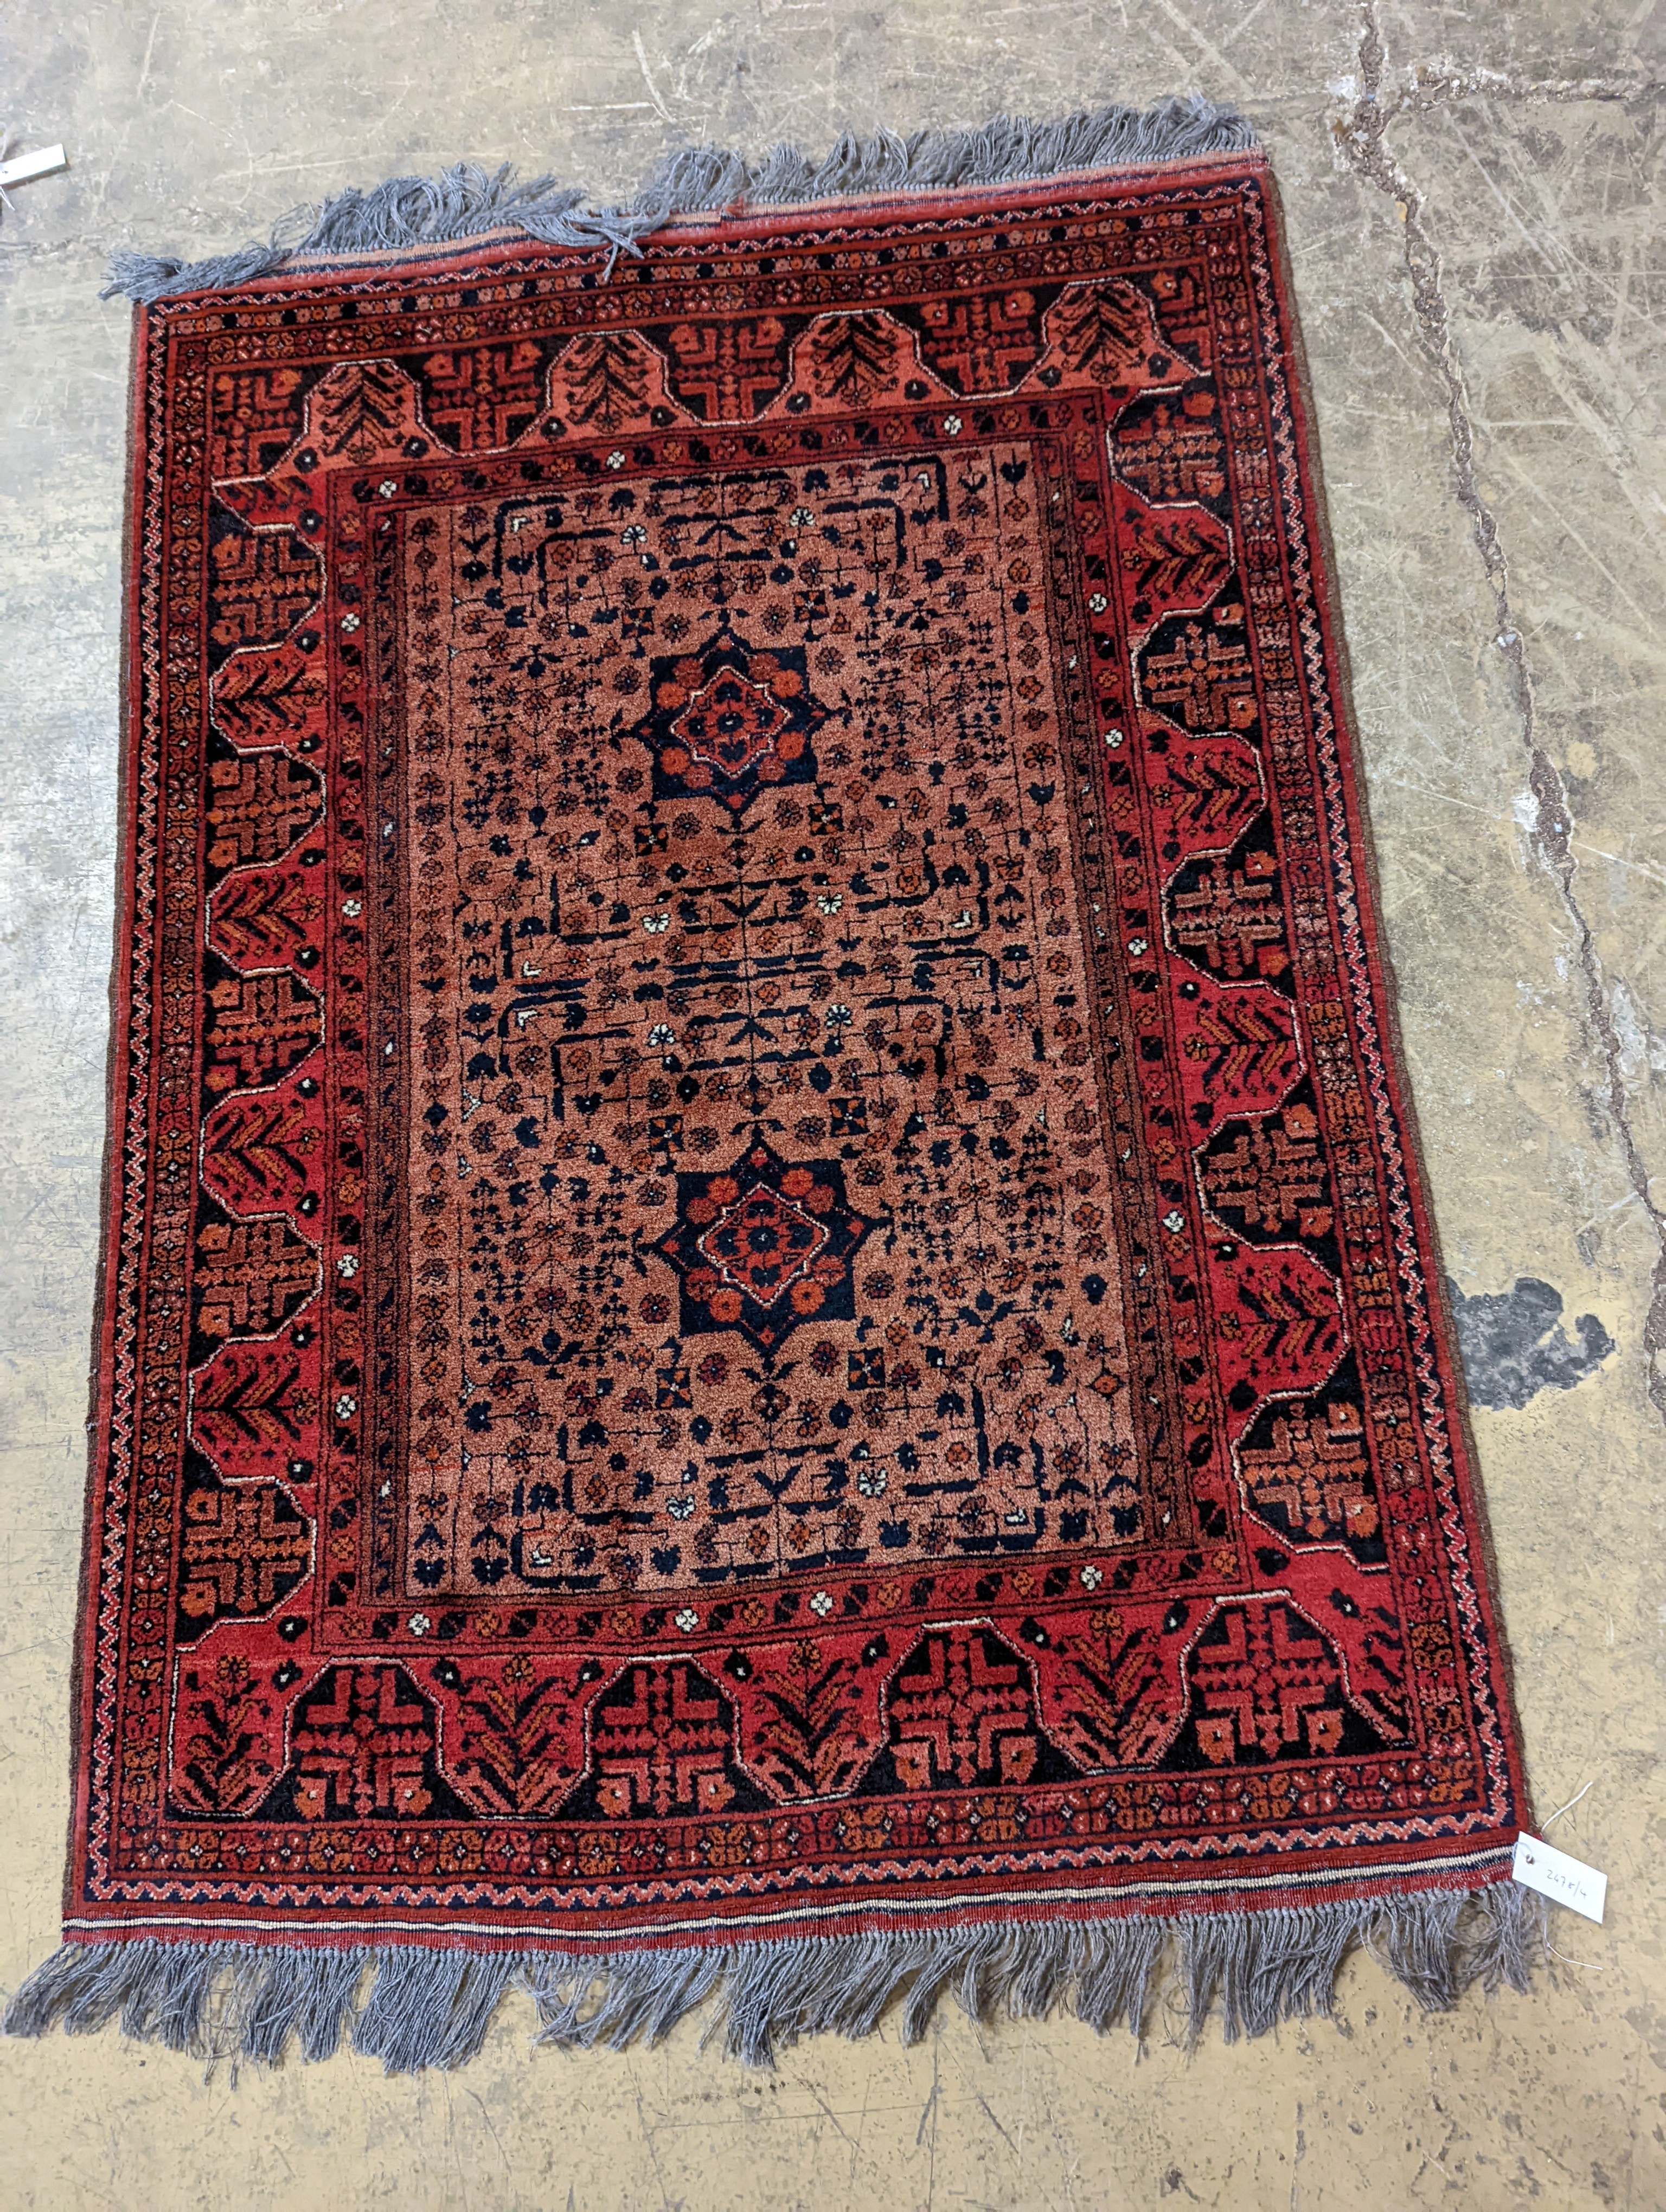 A Belouch red ground rug, 148 x 106cm